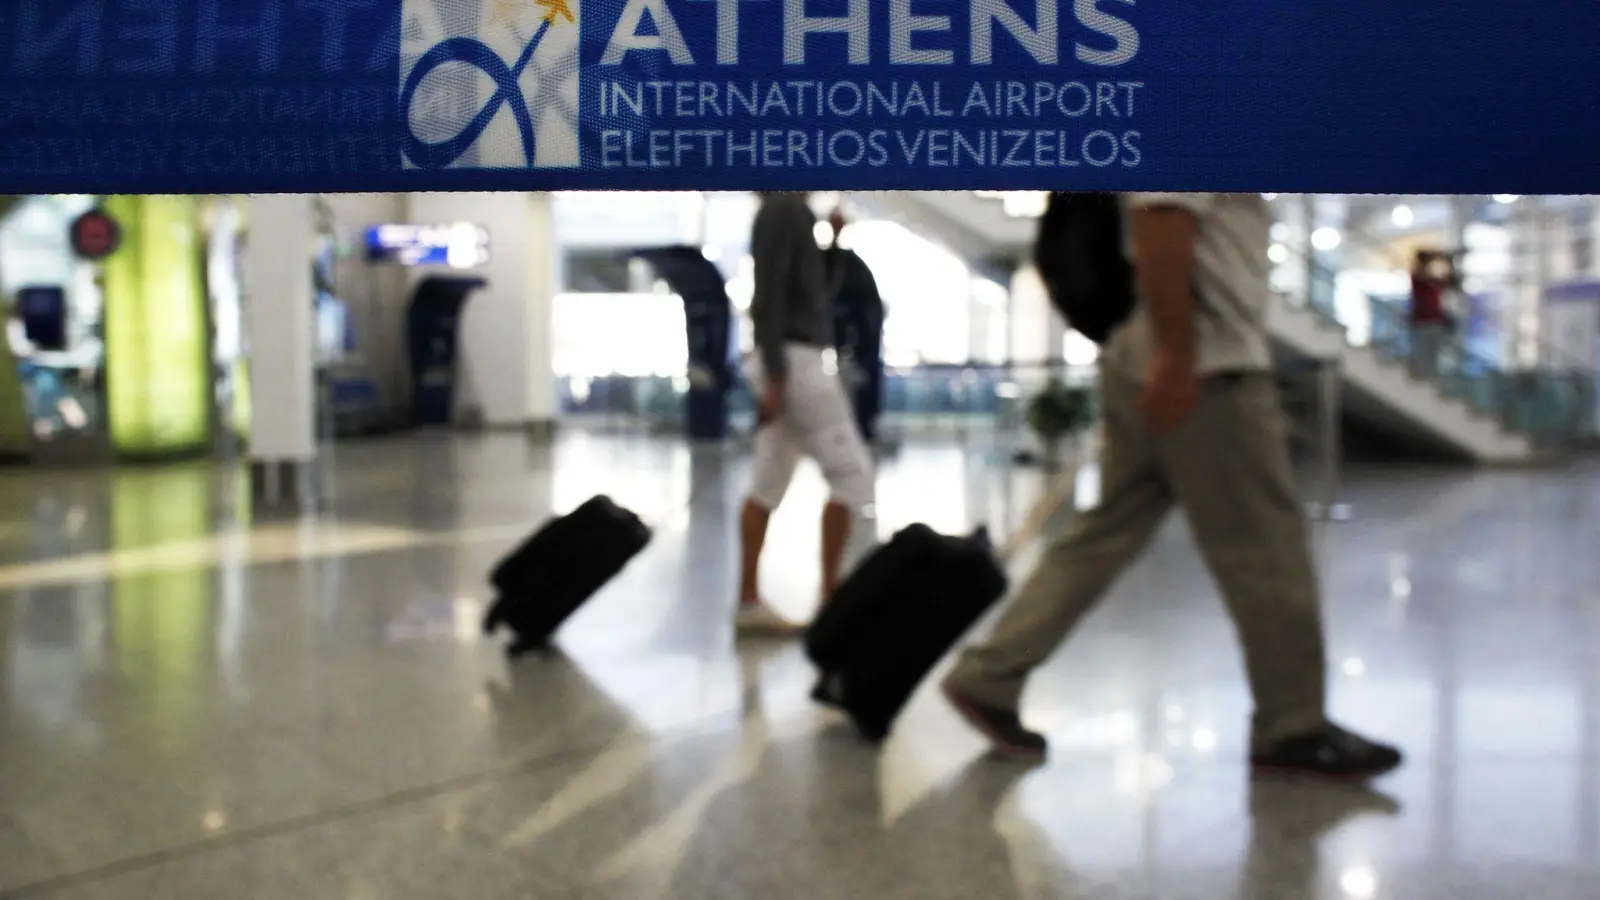 Am Donnerstag wollen in Griechenland auch die Fluglotsen streiken. Das könnte den Flugverkehr dort zum Erliegen bringen. (Foto: ANGELOS TZORTZINIS/afp/dpa-tmn)